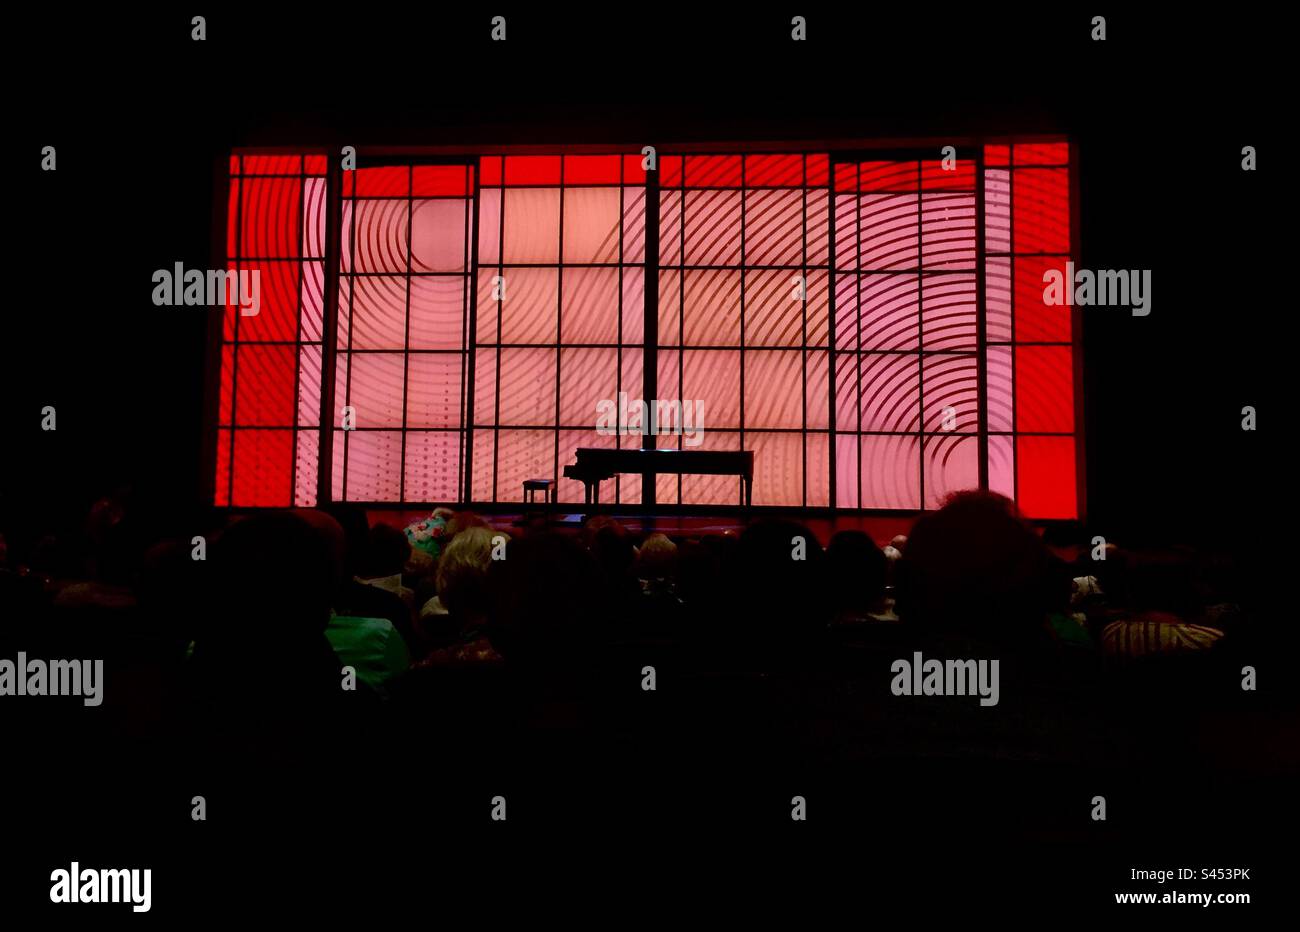 Mostra ora. Il pubblico attende l'artista. Un pianoforte a coda e una panchina sul palco. Ontario, Canada. Foto Stock